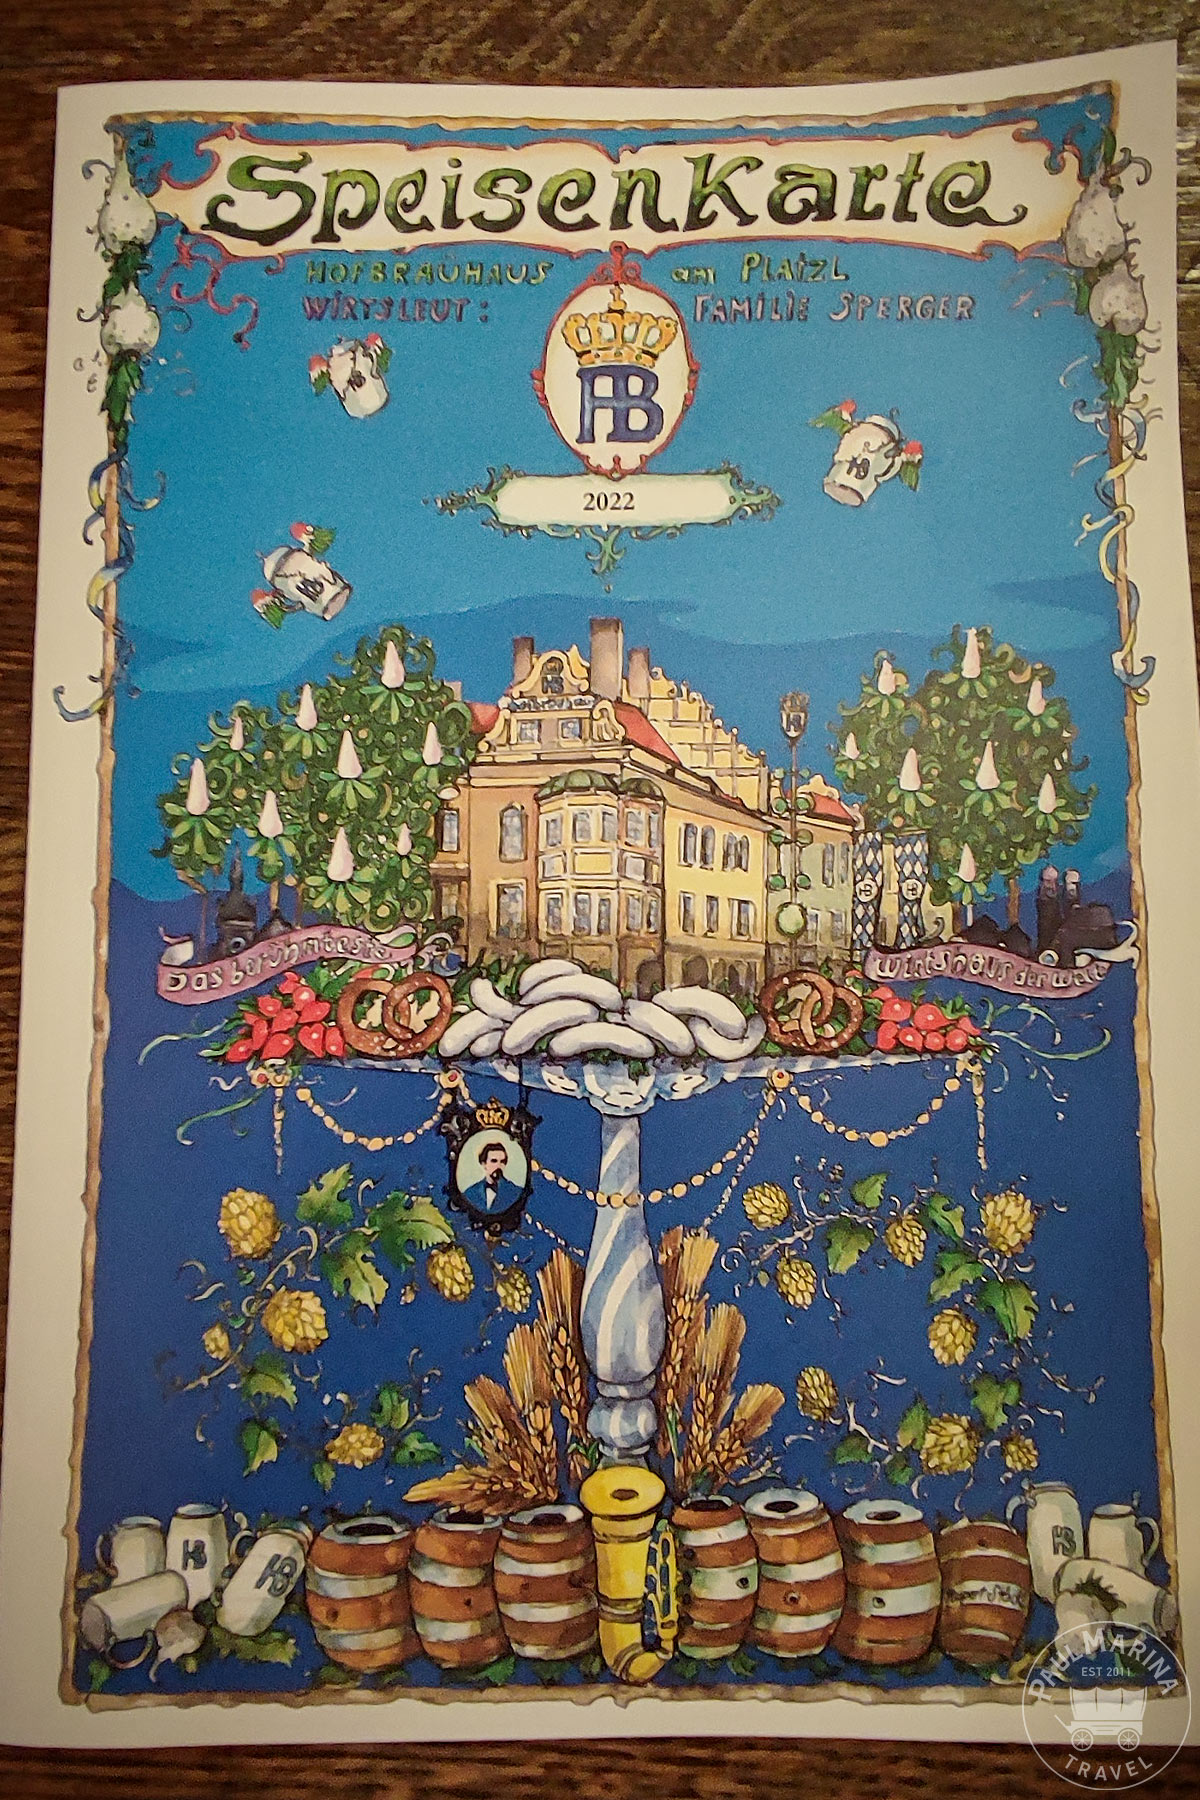 Hofbräuhaus menu card cover design